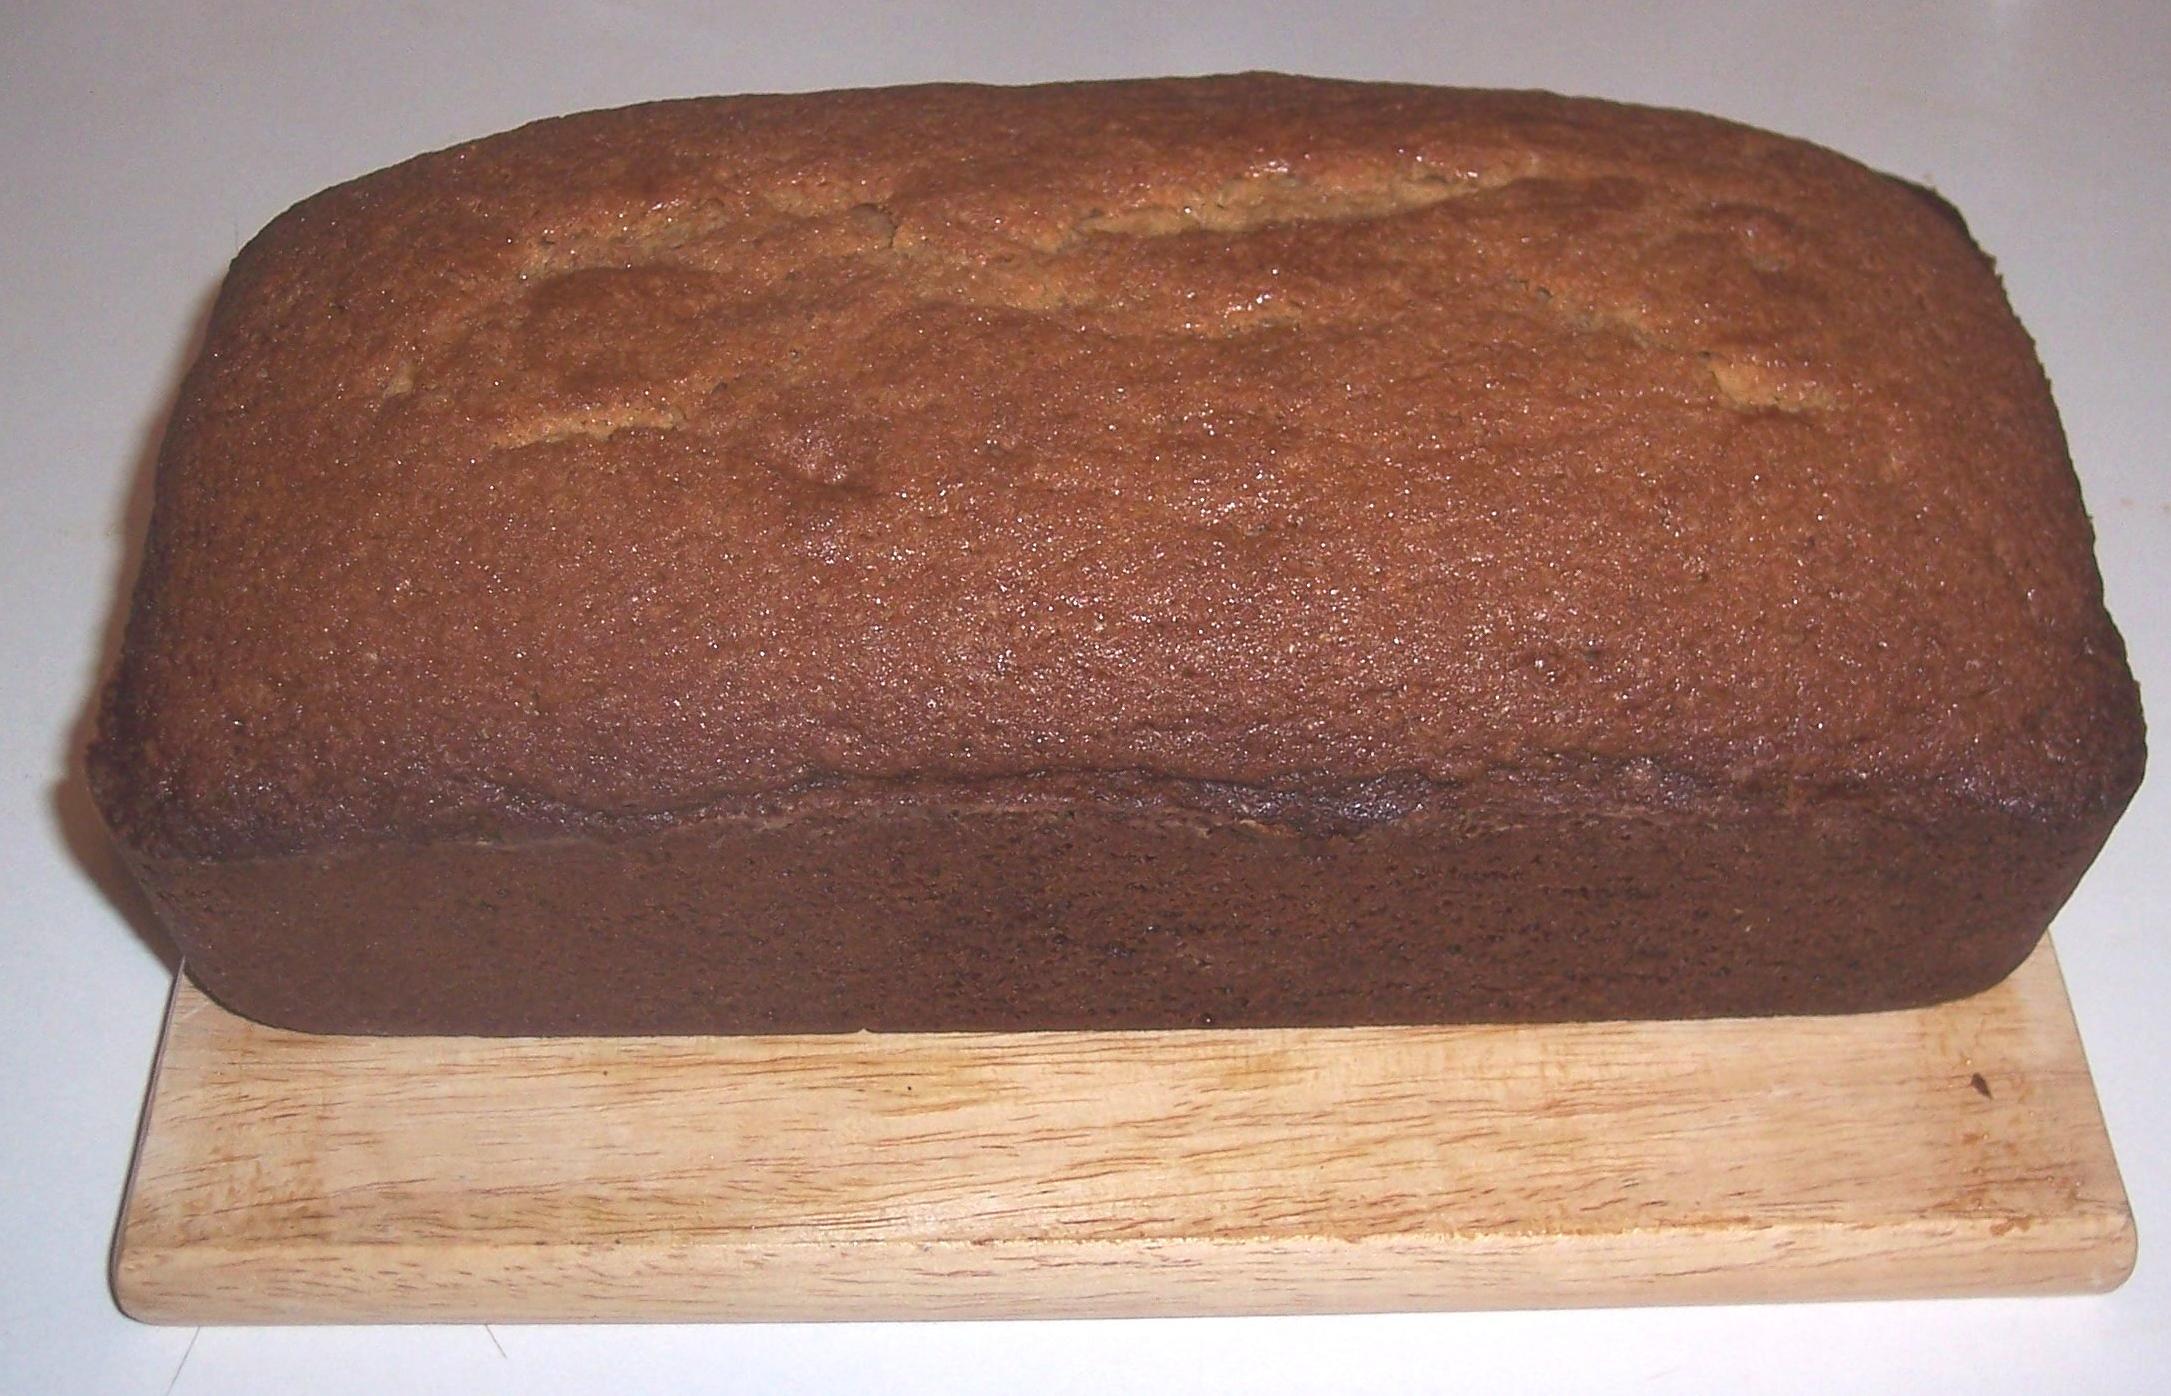 Irresistible Brown Sugar Pound Cake Recipe